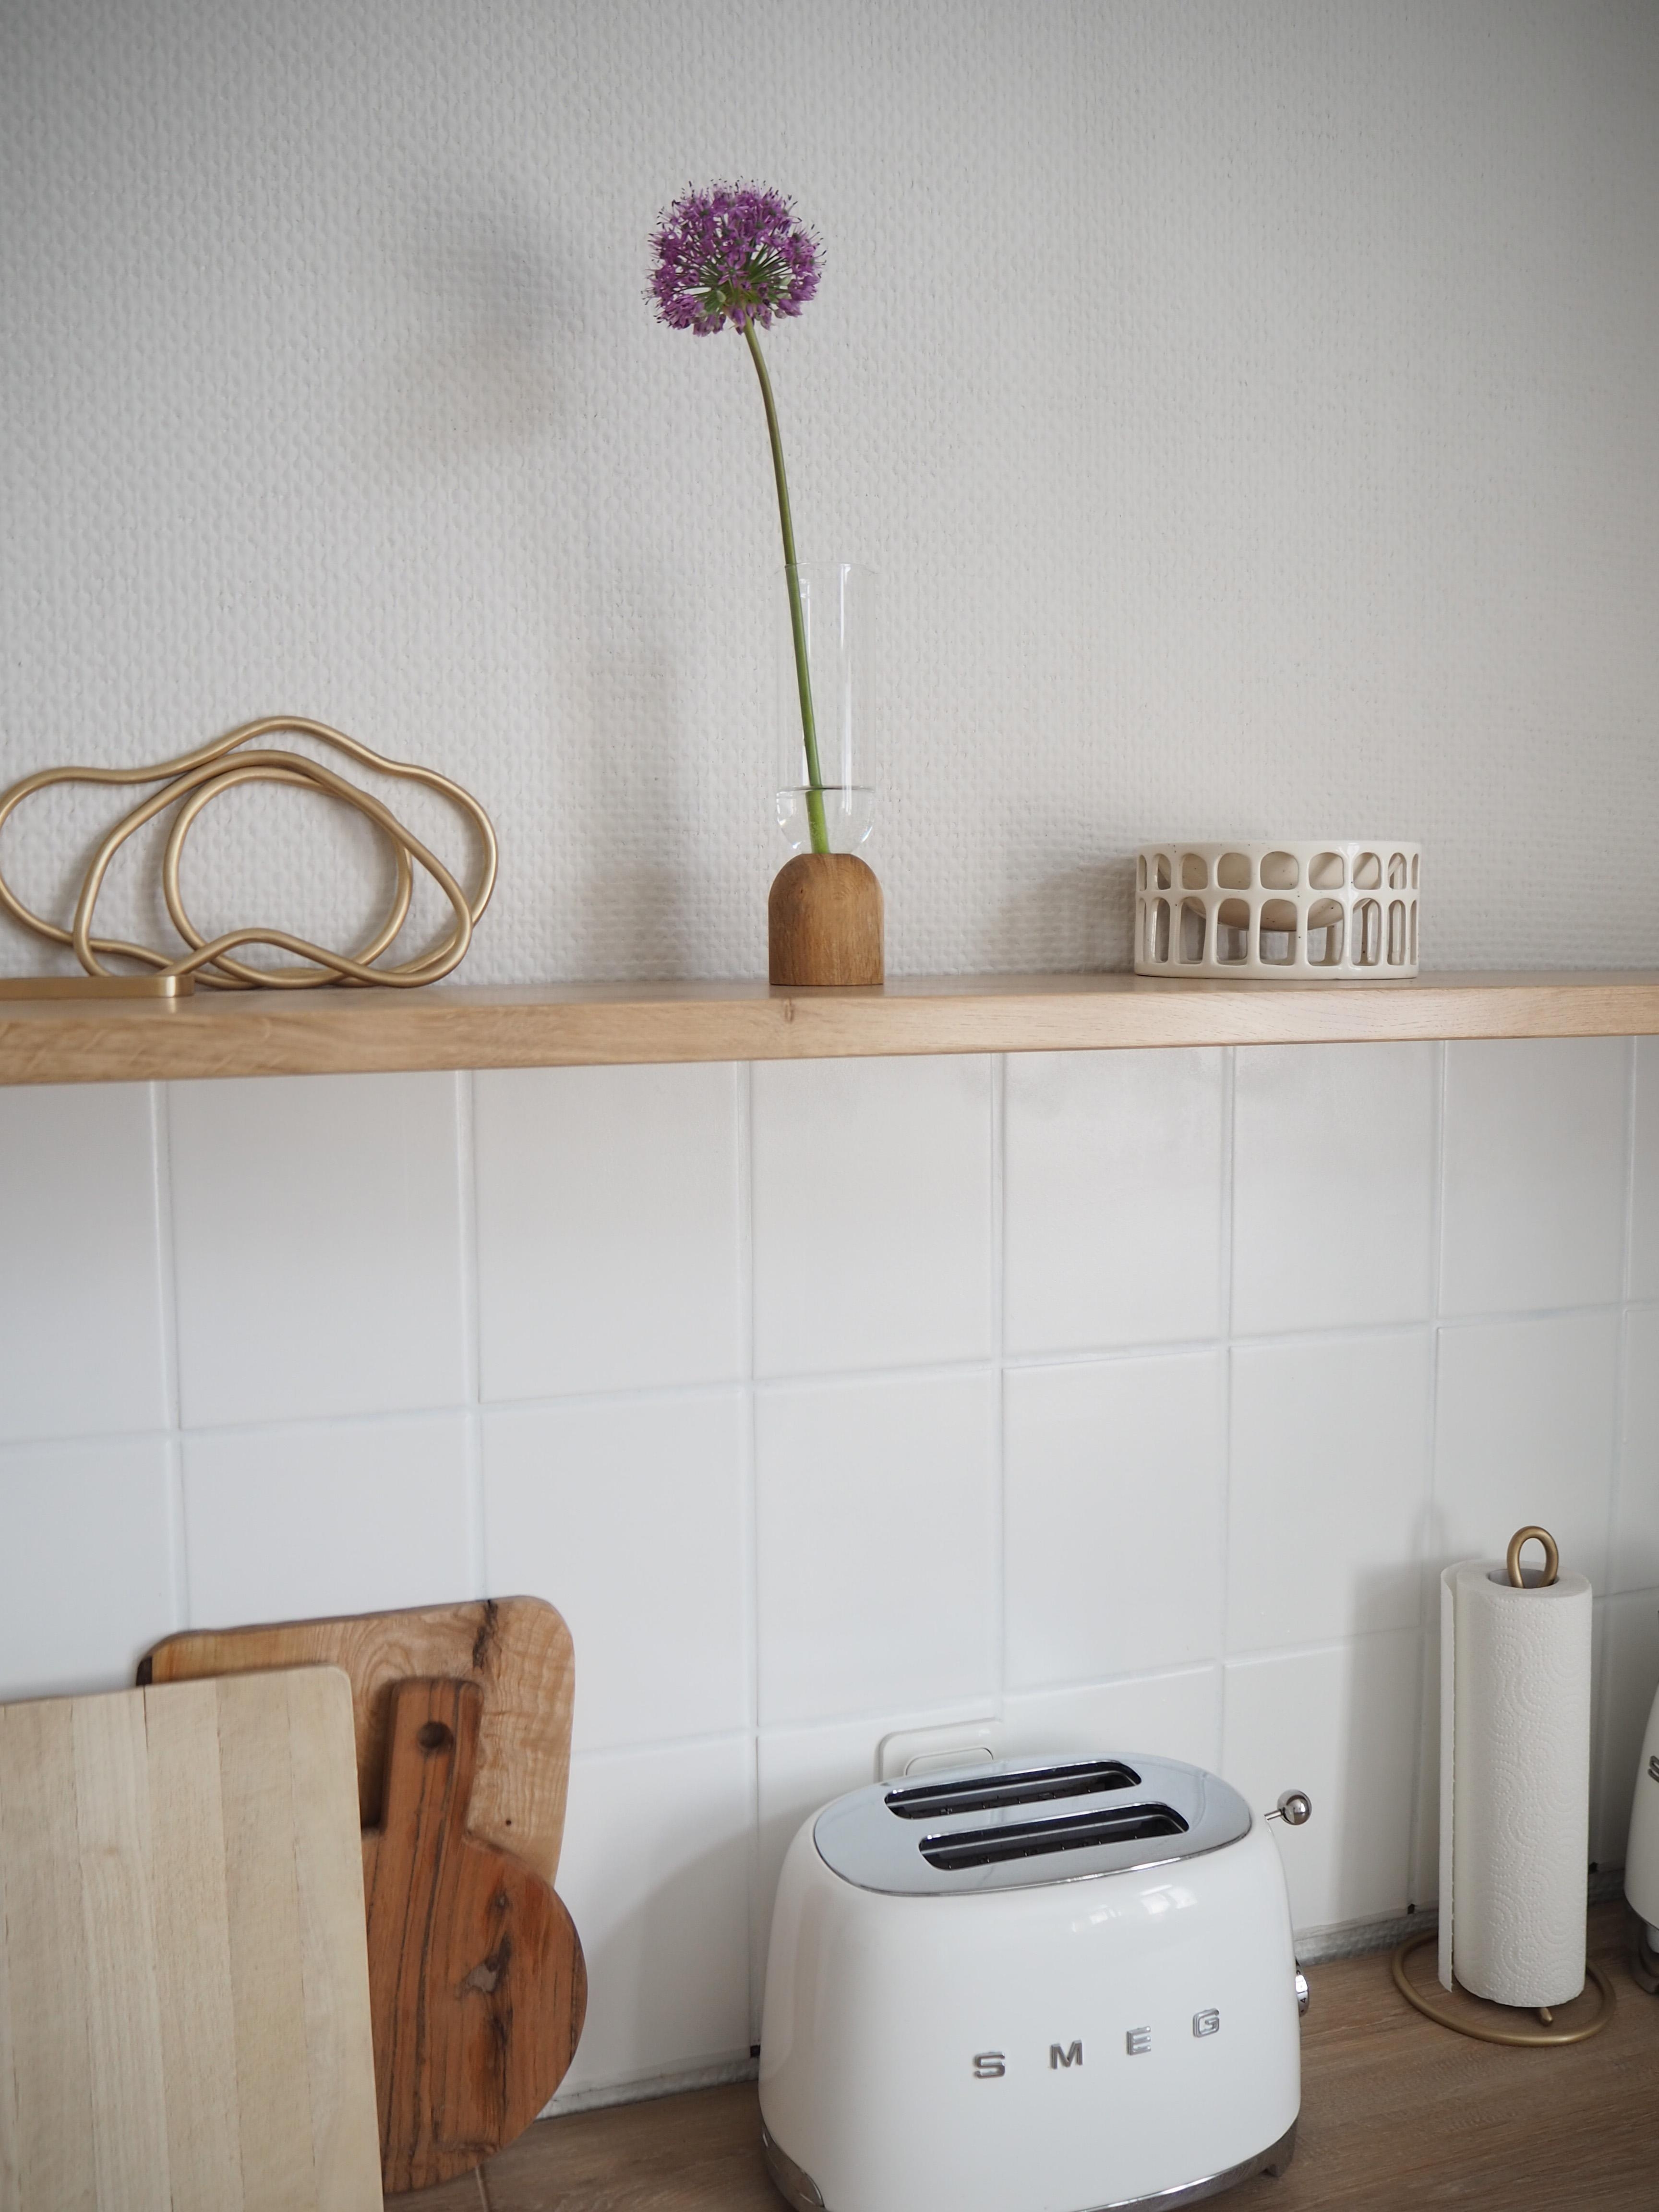 #küche #küchendeko #blumen #farben #holz #makeover #details #minimalismus #nordic #boho